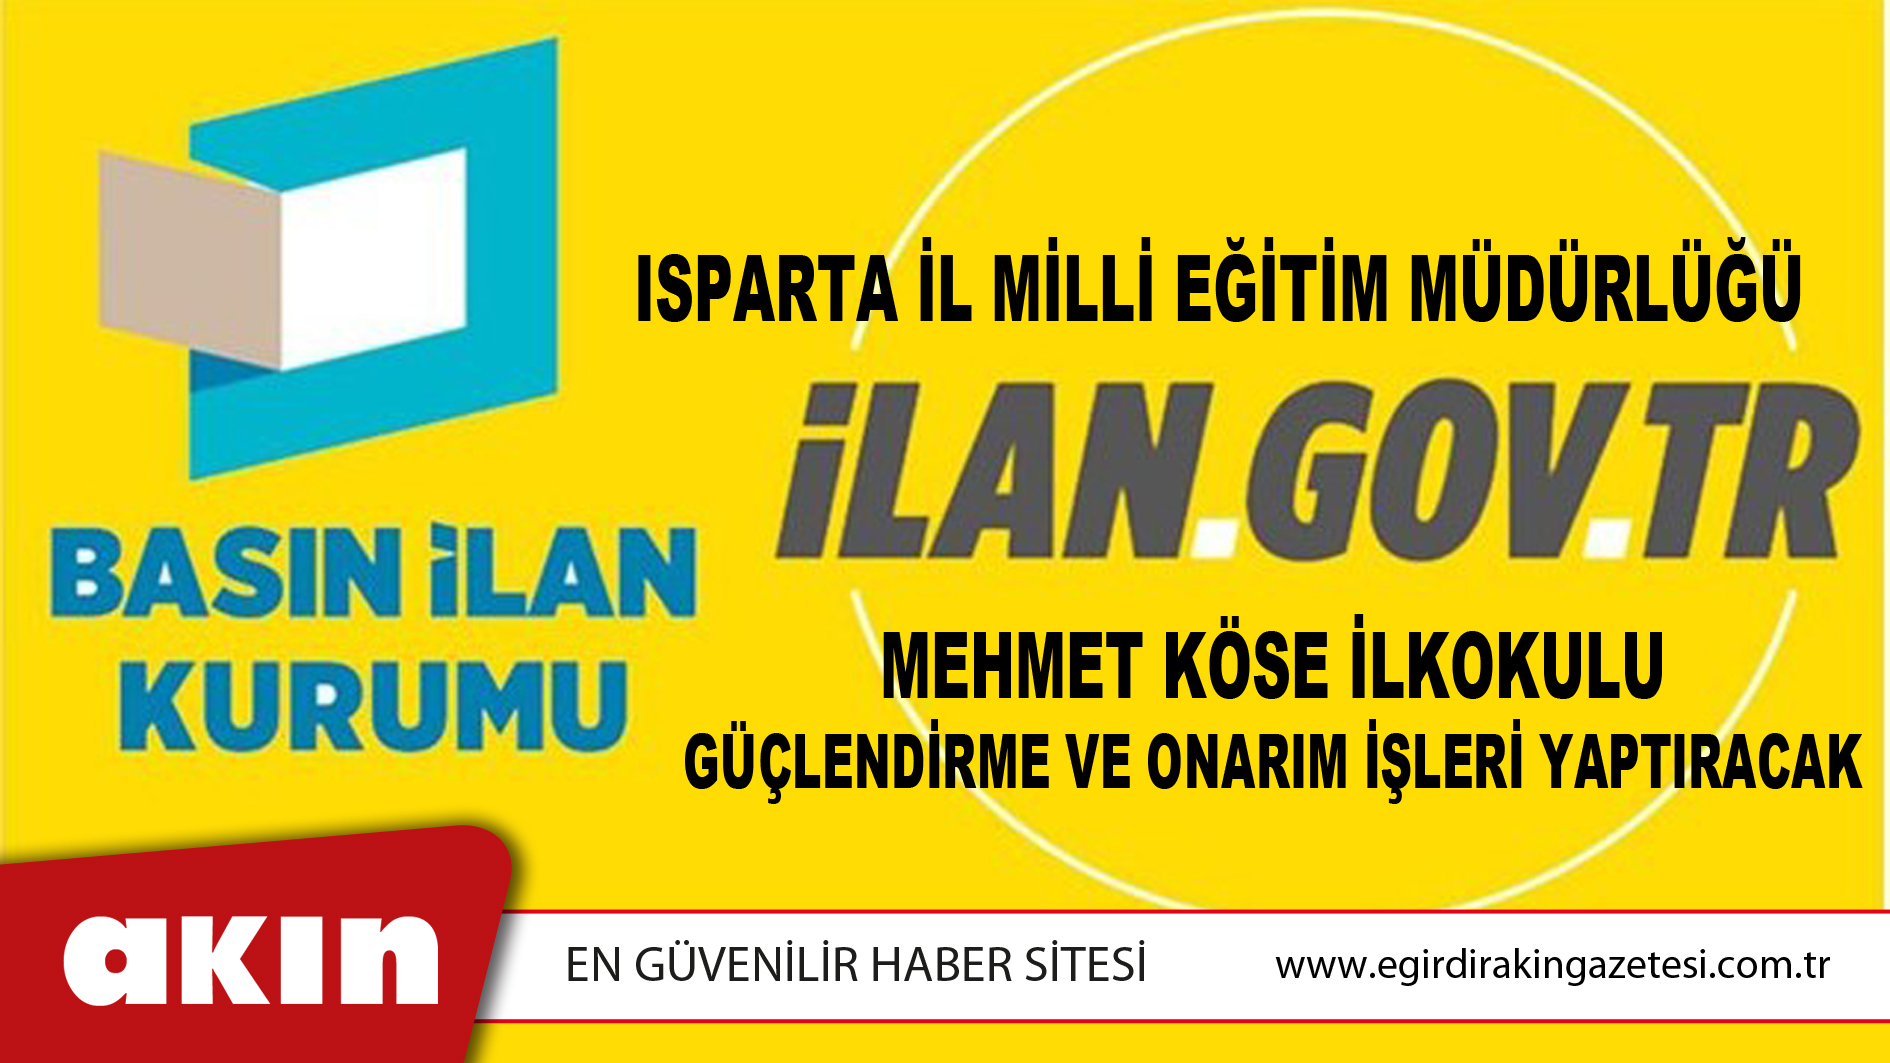 Isparta İl Milli Eğitim Müdürlüğü Mehmet Köse İlkokulu Güçlendirme Ve Onarım İşleri Yaptıracak